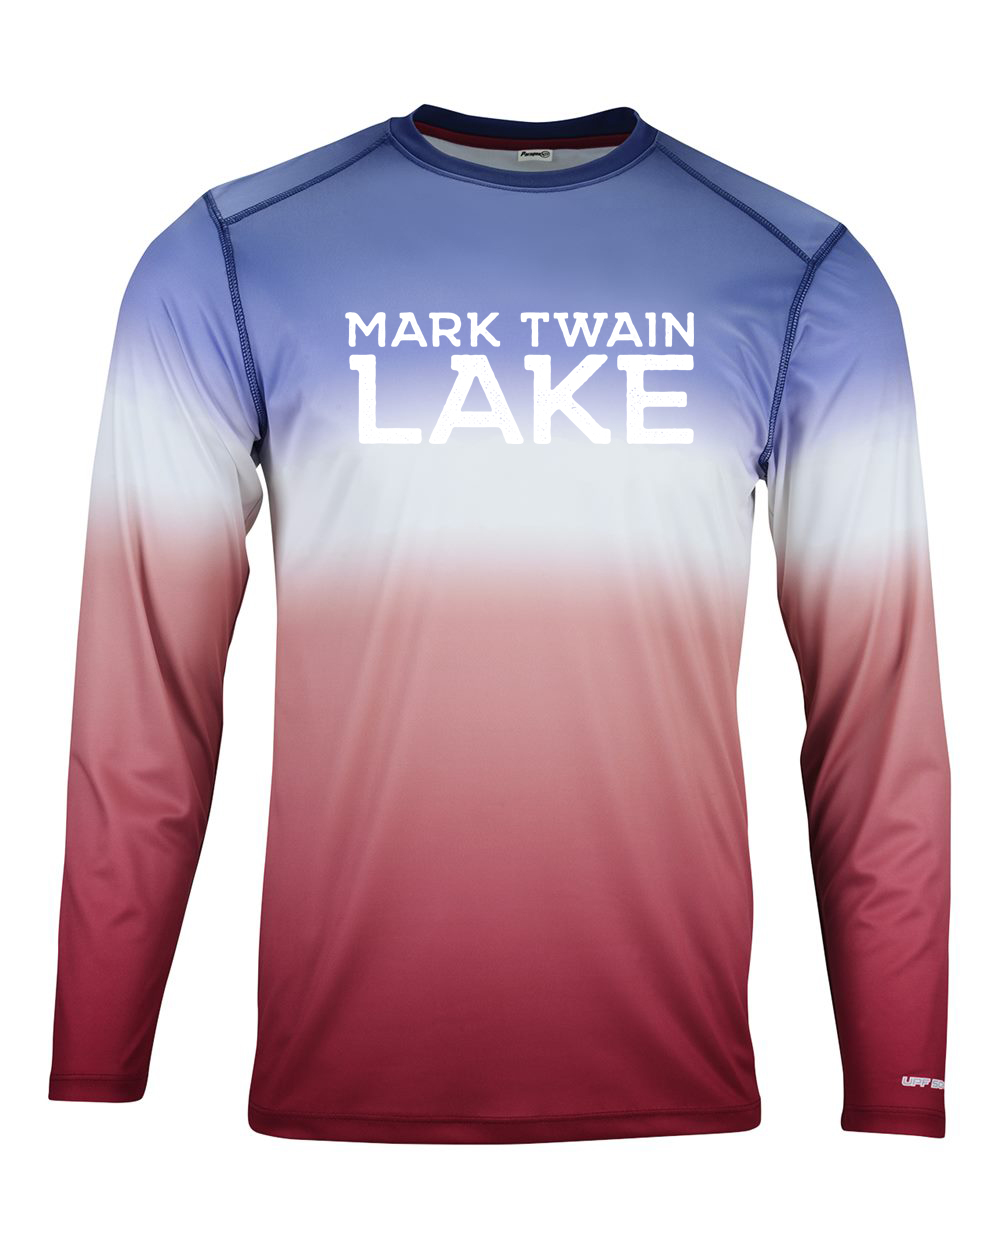 Mark Twain Lake | Performance shirt